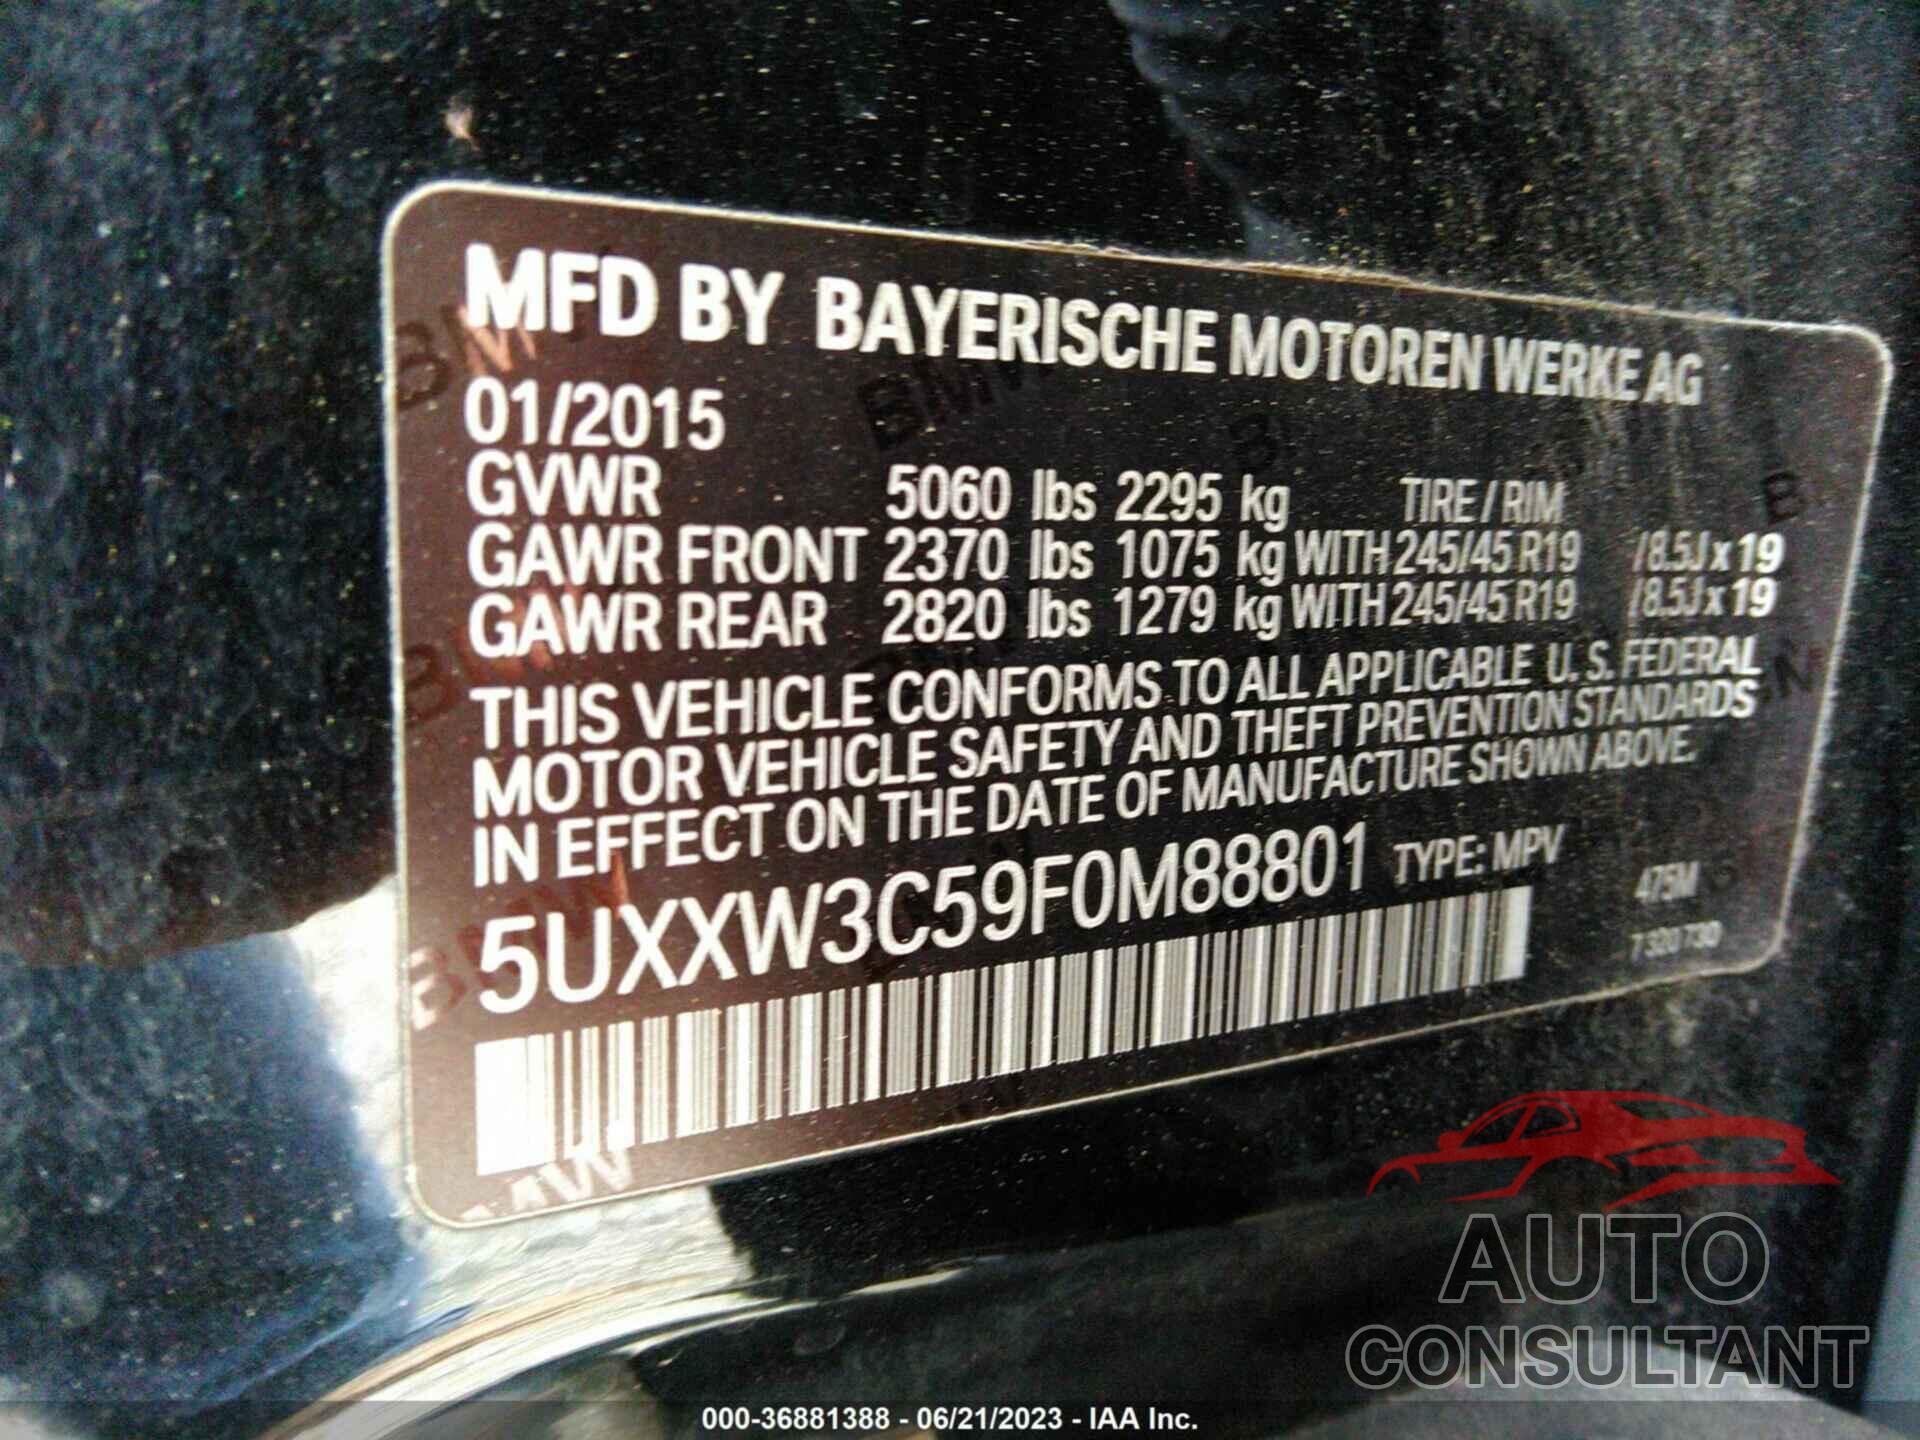 BMW X4 2015 - 5UXXW3C59F0M88801